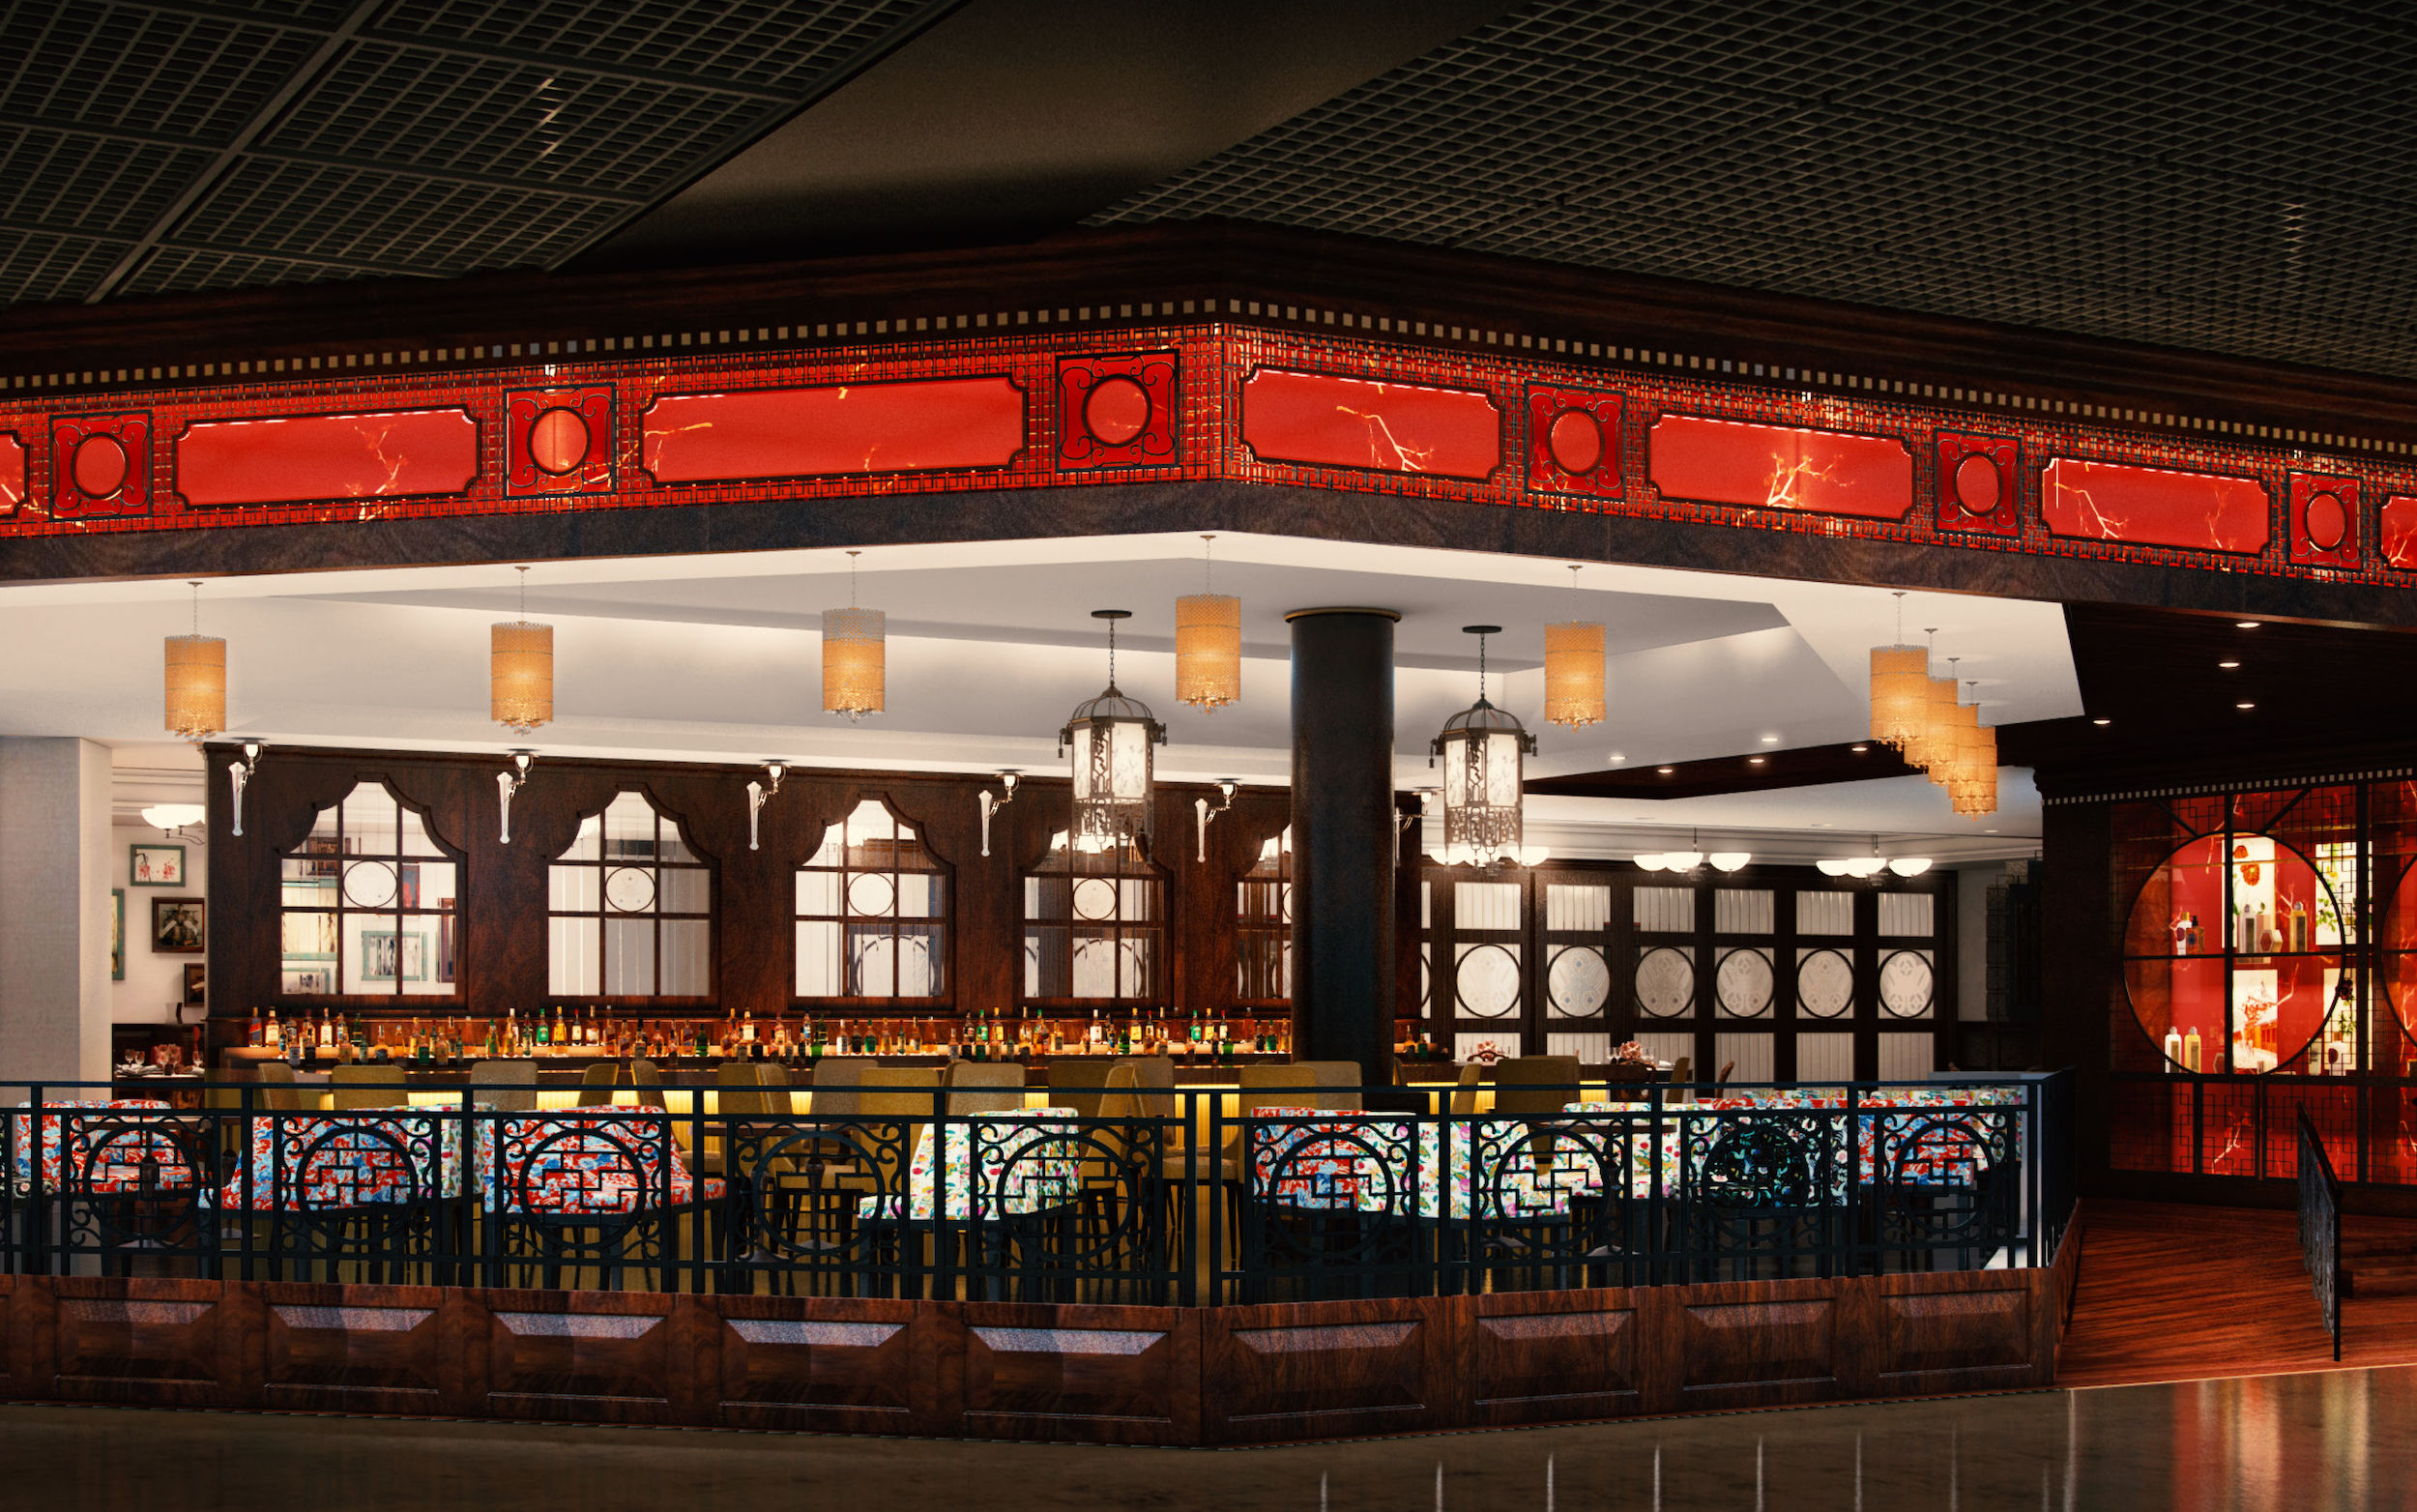 Lai Sun debuts China Tang at the MGM Grand Las Vegas